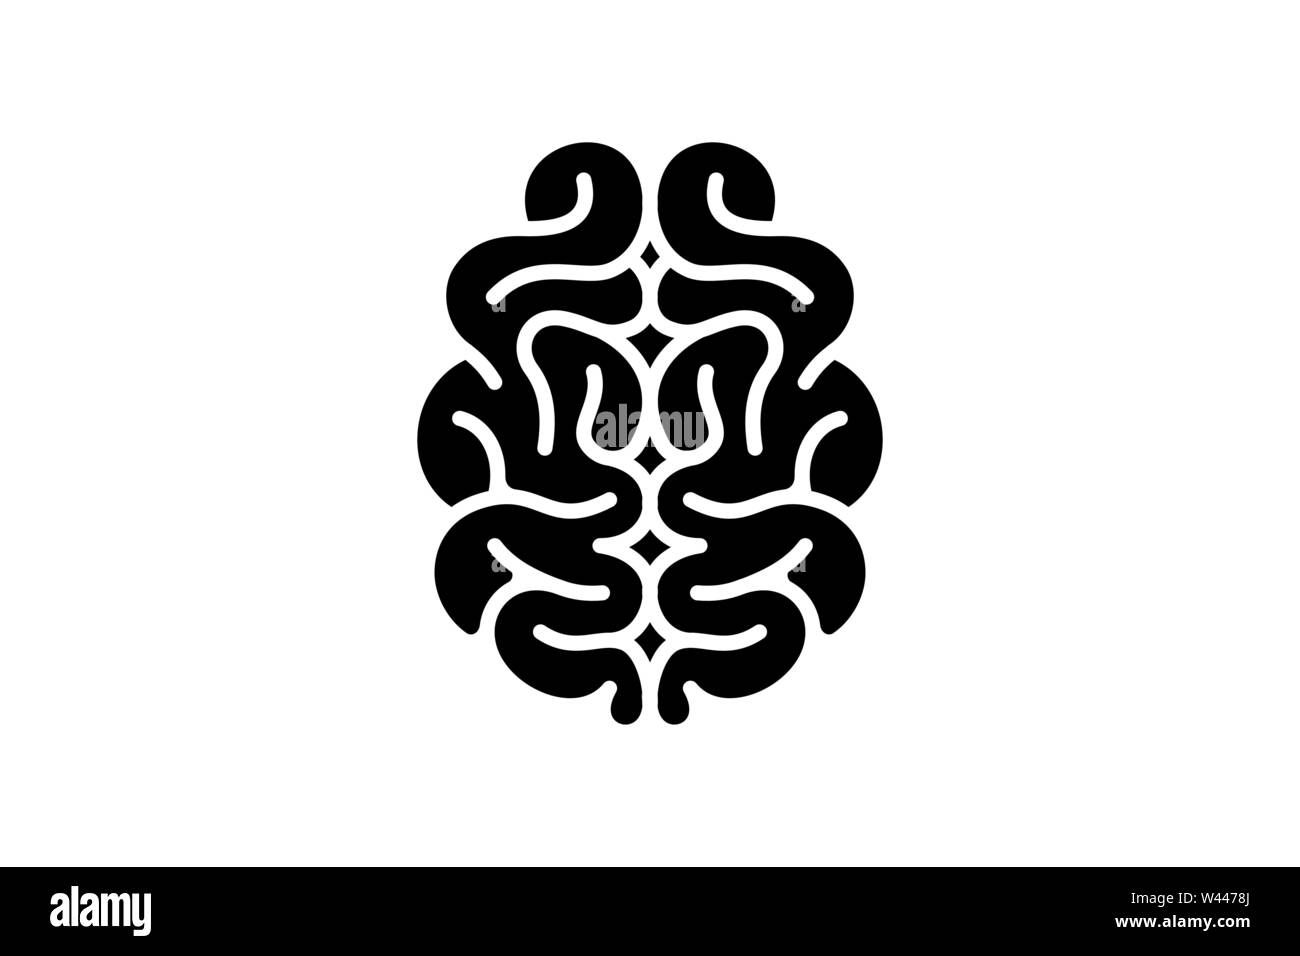 Gehirn Intelligenz Verstand unterzeichnen. Zentralen Nervensystems Orgel schwarzes Symbol. Vektor symbol Abbildung Stock Vektor